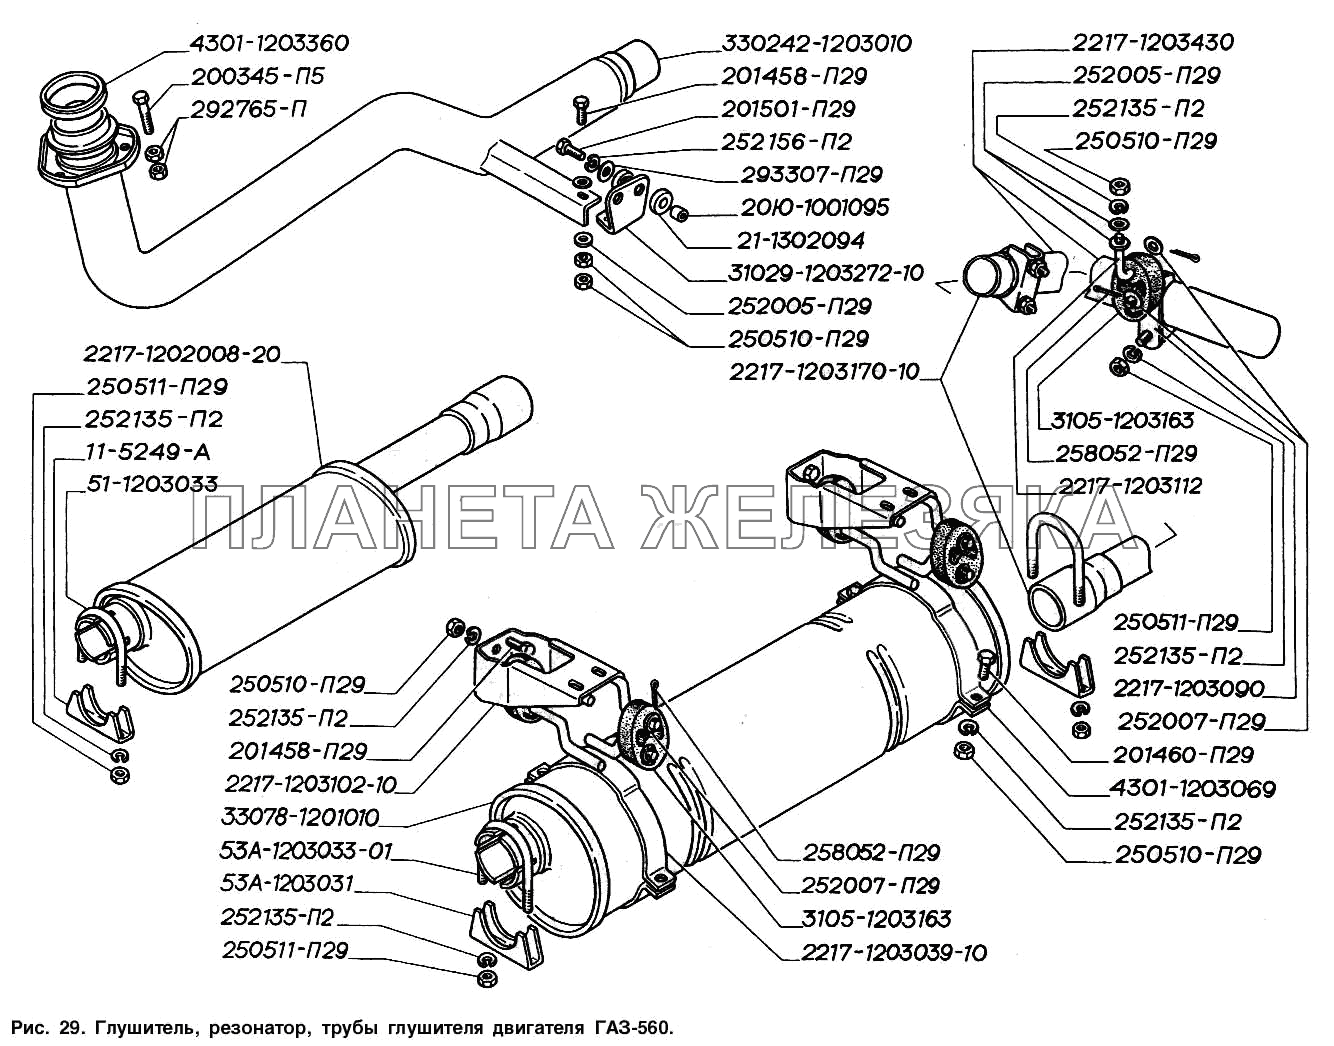 Глушитель, резонатор, трубы глушителя двигателя ГАЗ-560 ГАЗ-2217 (Соболь)